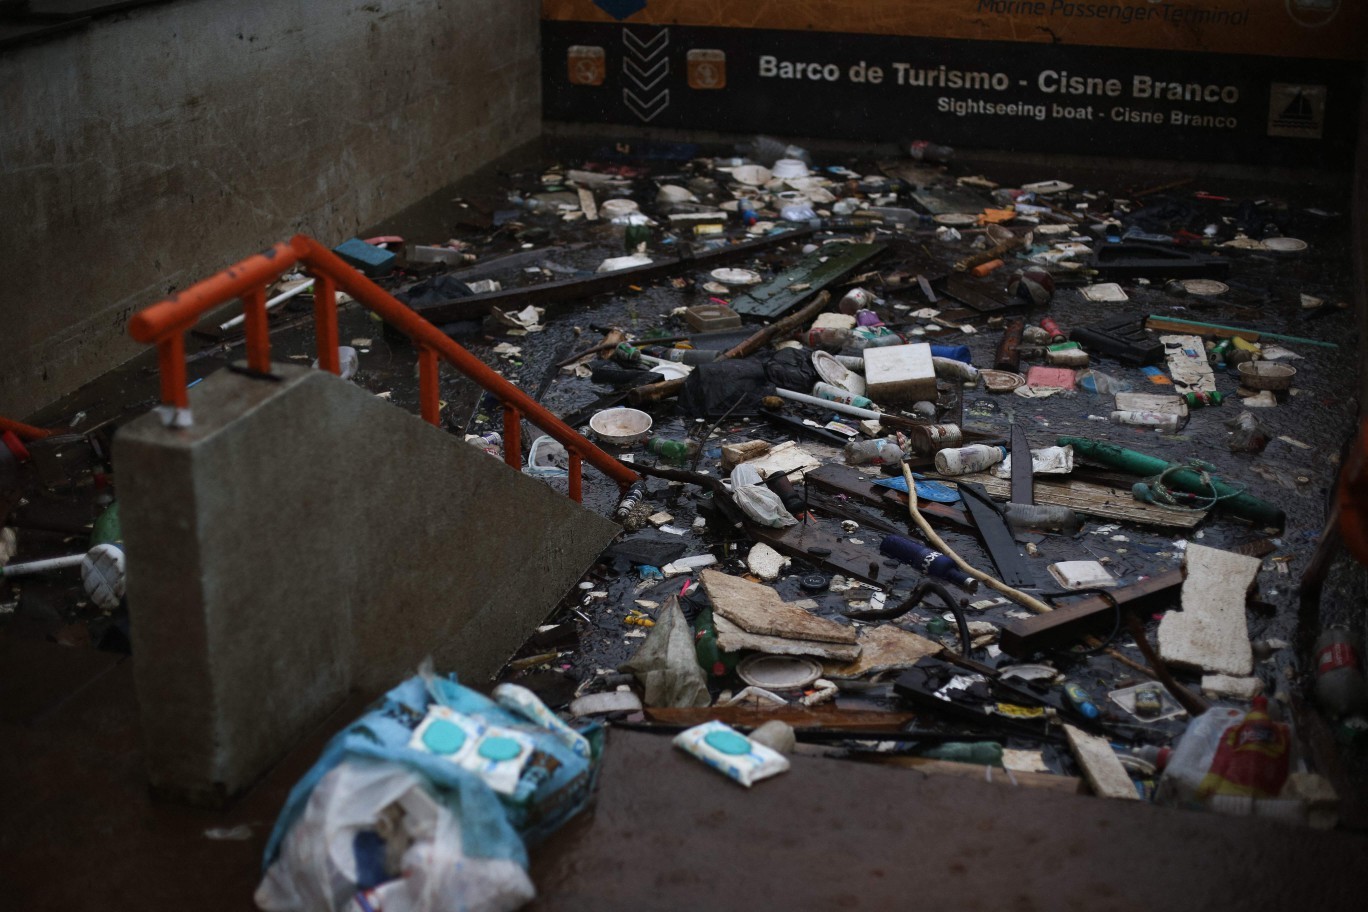 Escadas de acesso ao metrô em Porto Alegre estão cheias de lixo — Foto: Anselmo Cunha / AFP